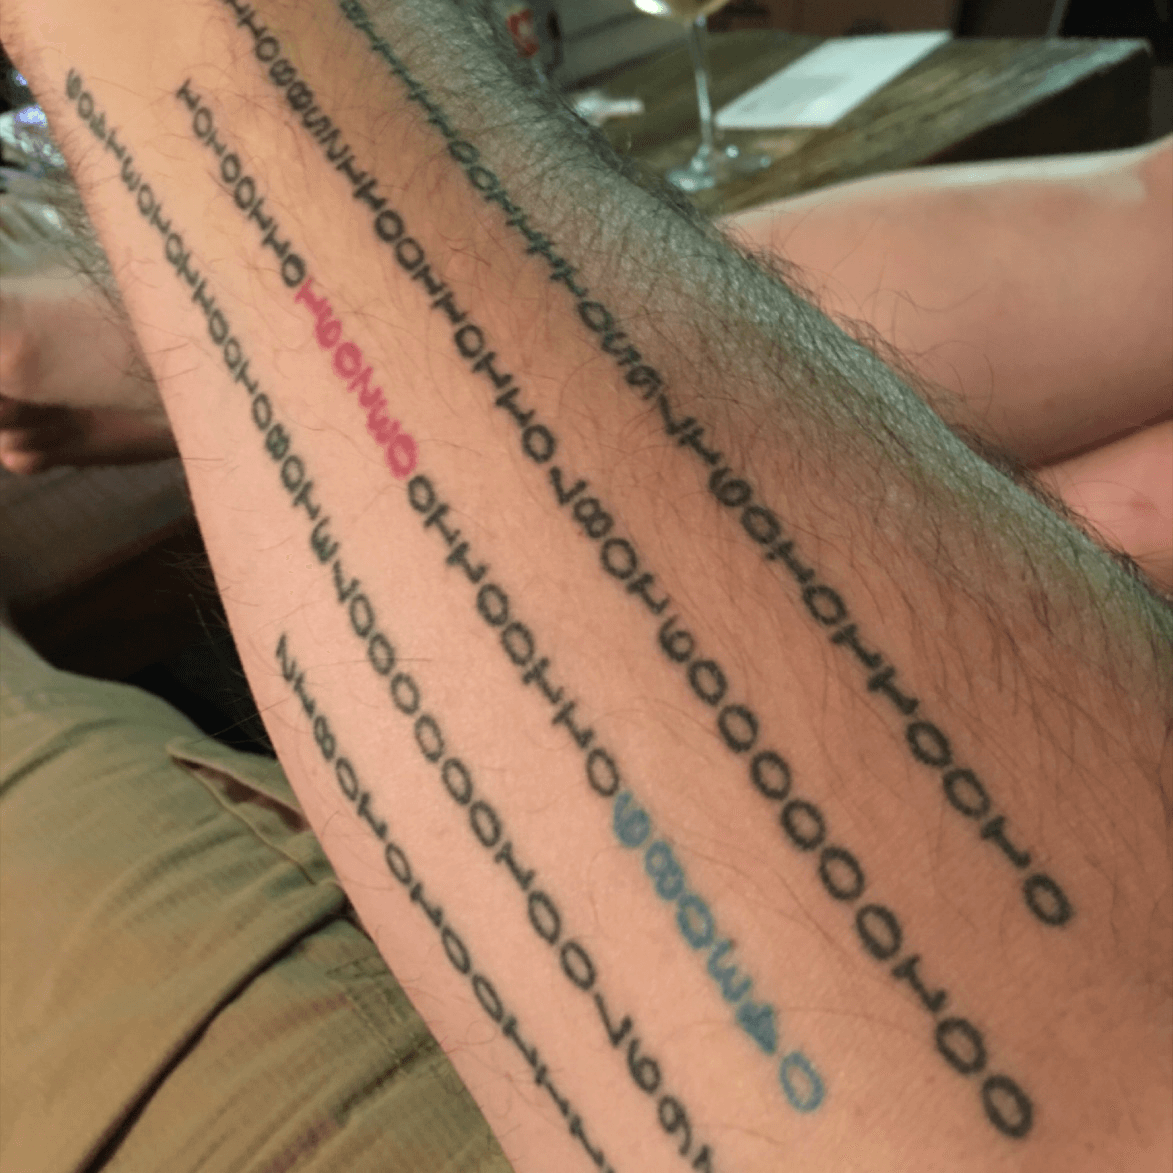 matrix code tattoo  Google Search  Sleeve tattoos Tattoos Movie tattoos